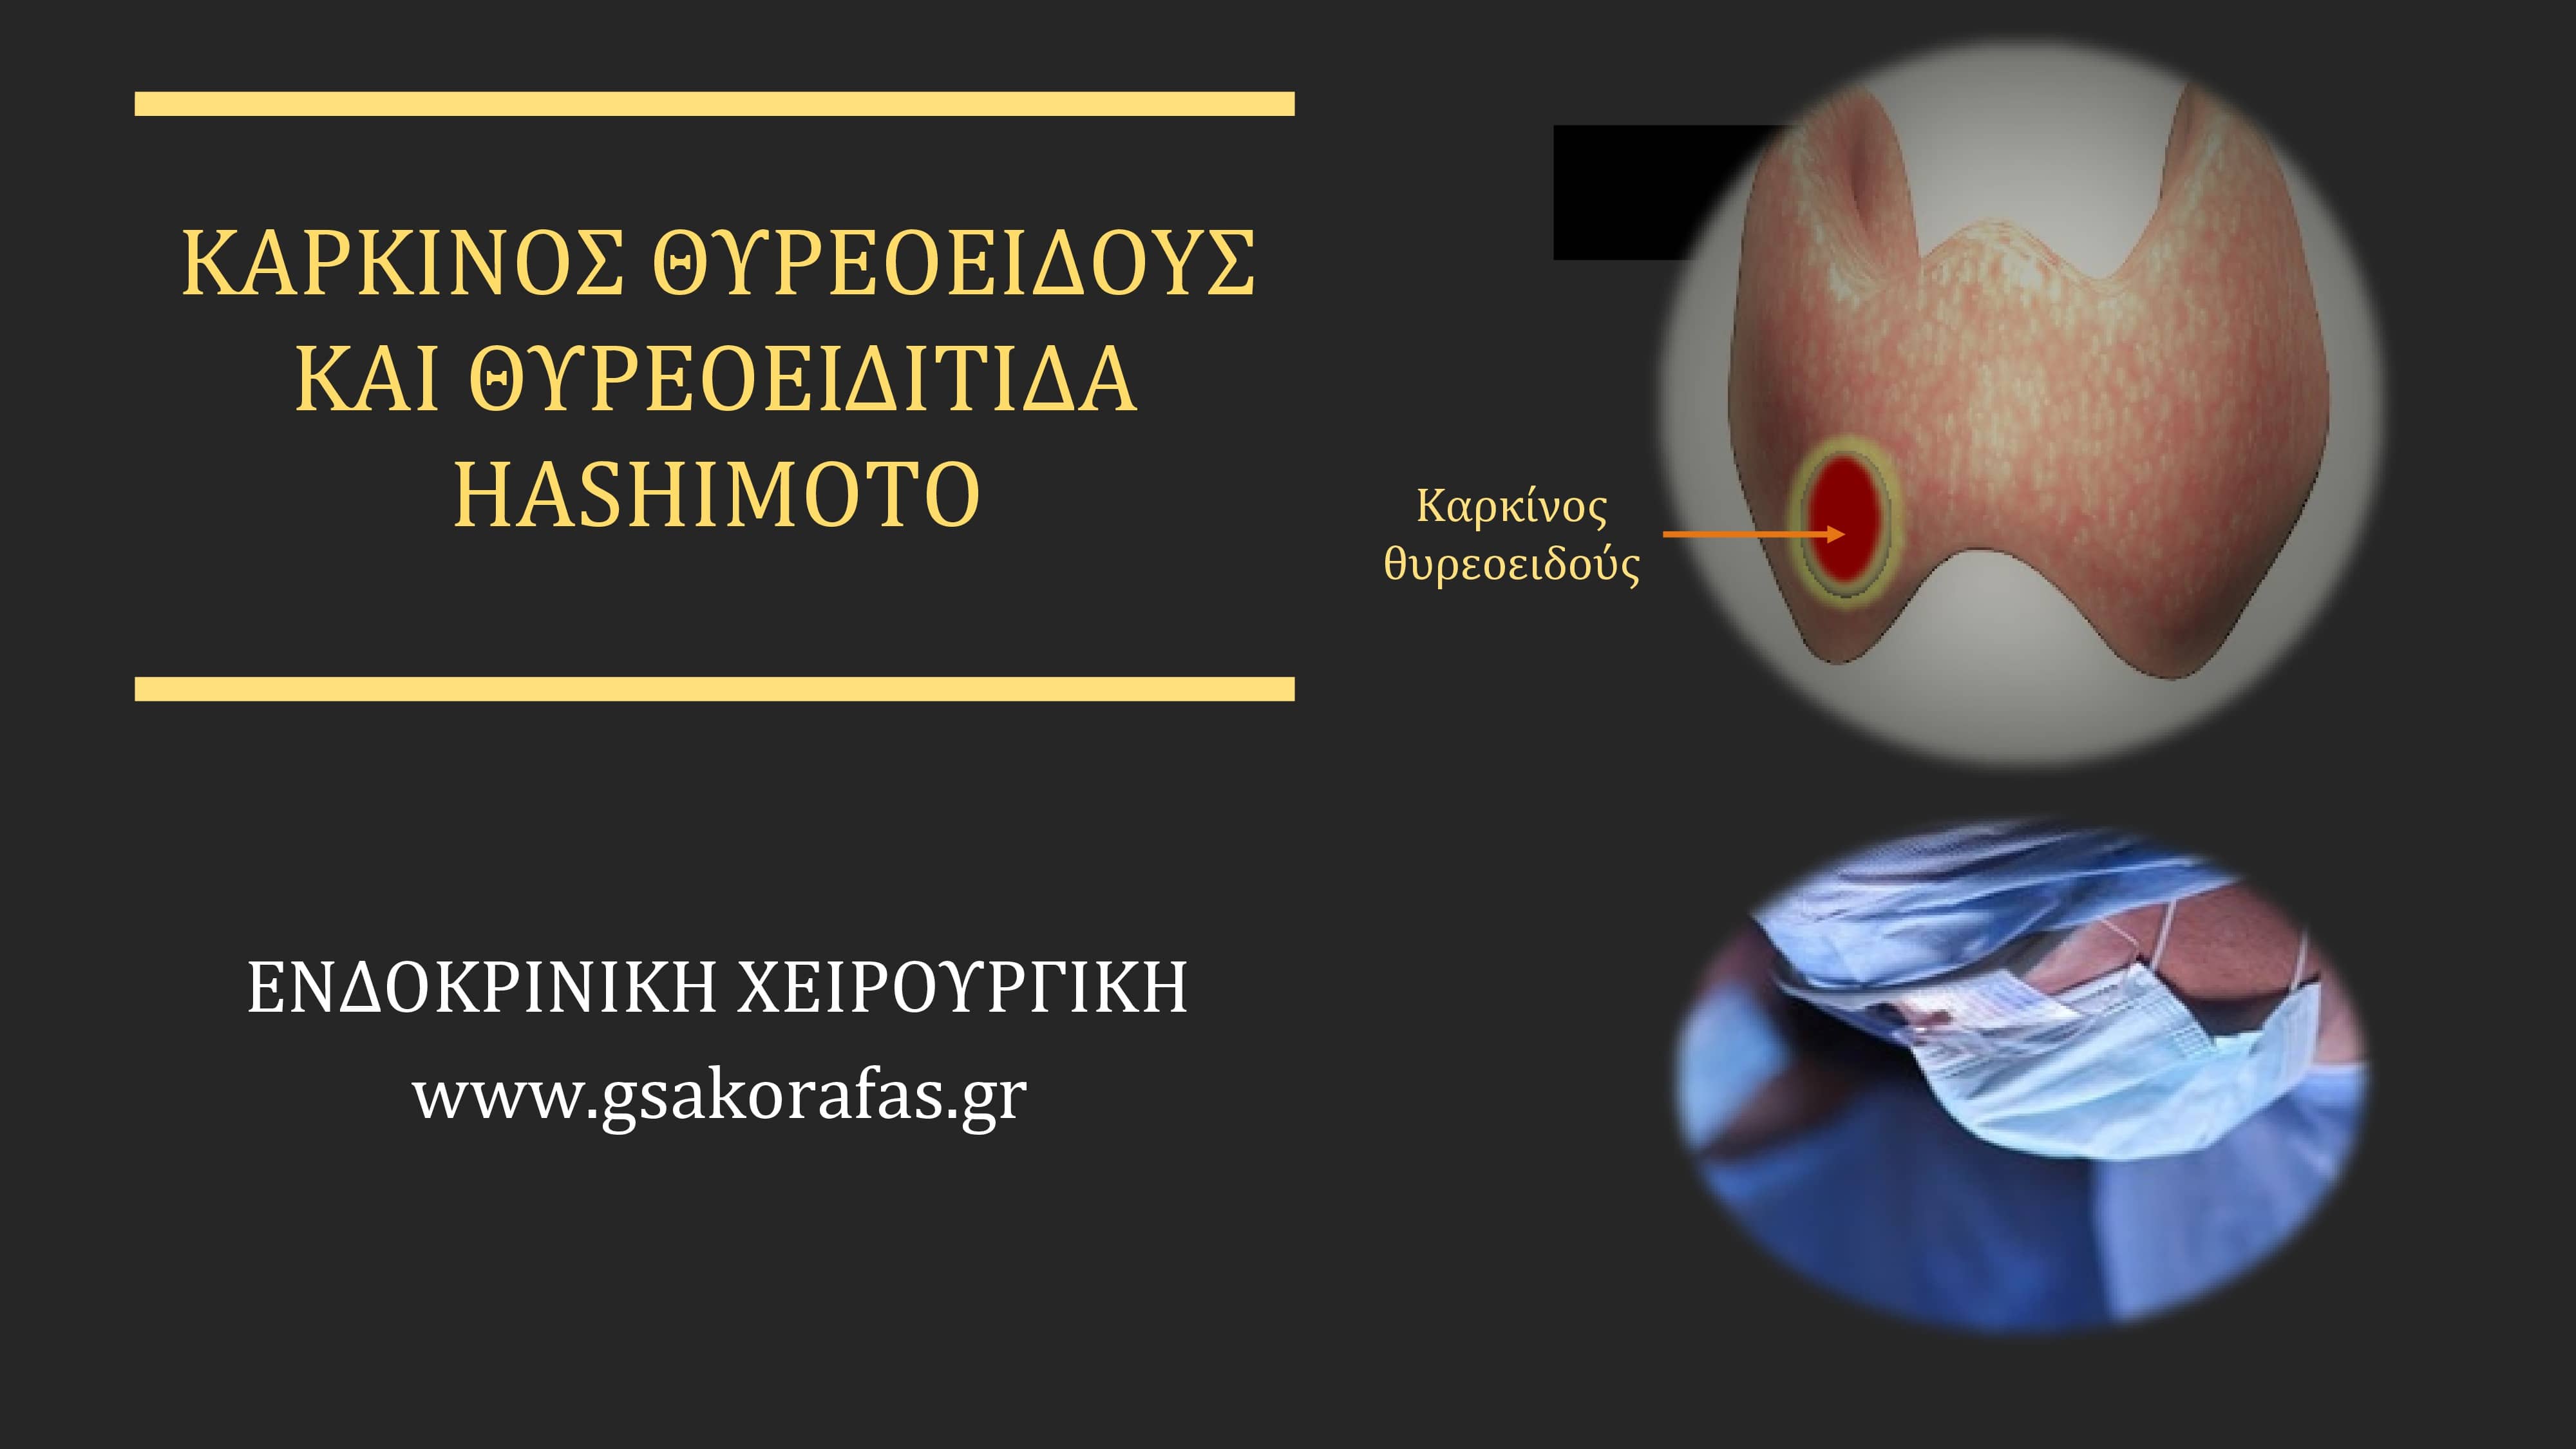 Θυρεοειδίτιδα Hashimoto και καρκίνος θυρεοειδούς